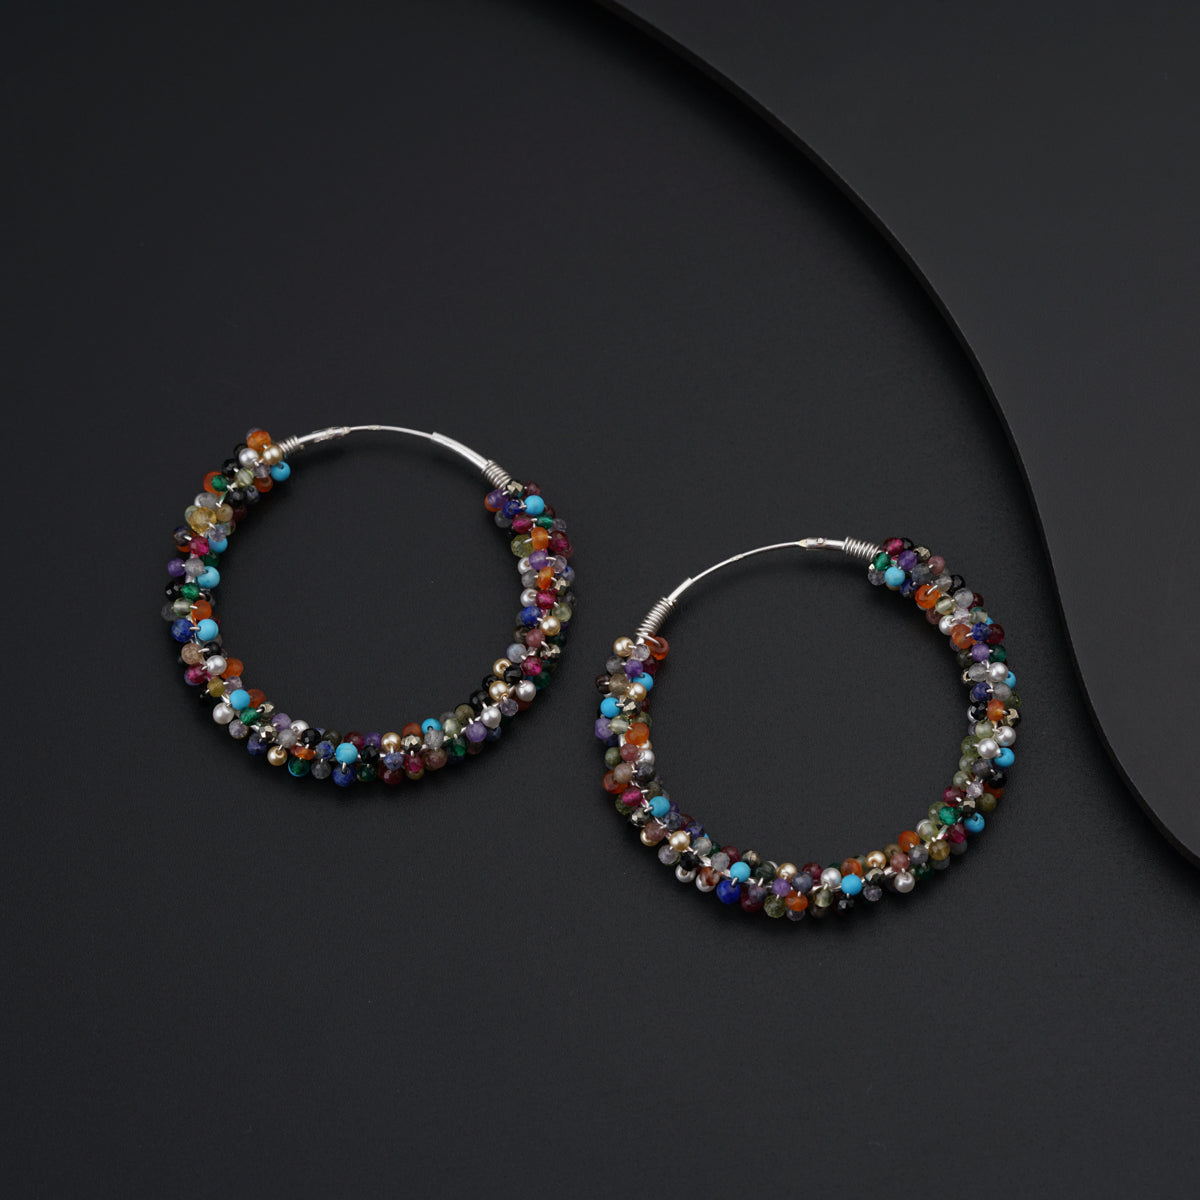 a pair of beaded hoop earrings on a black surface